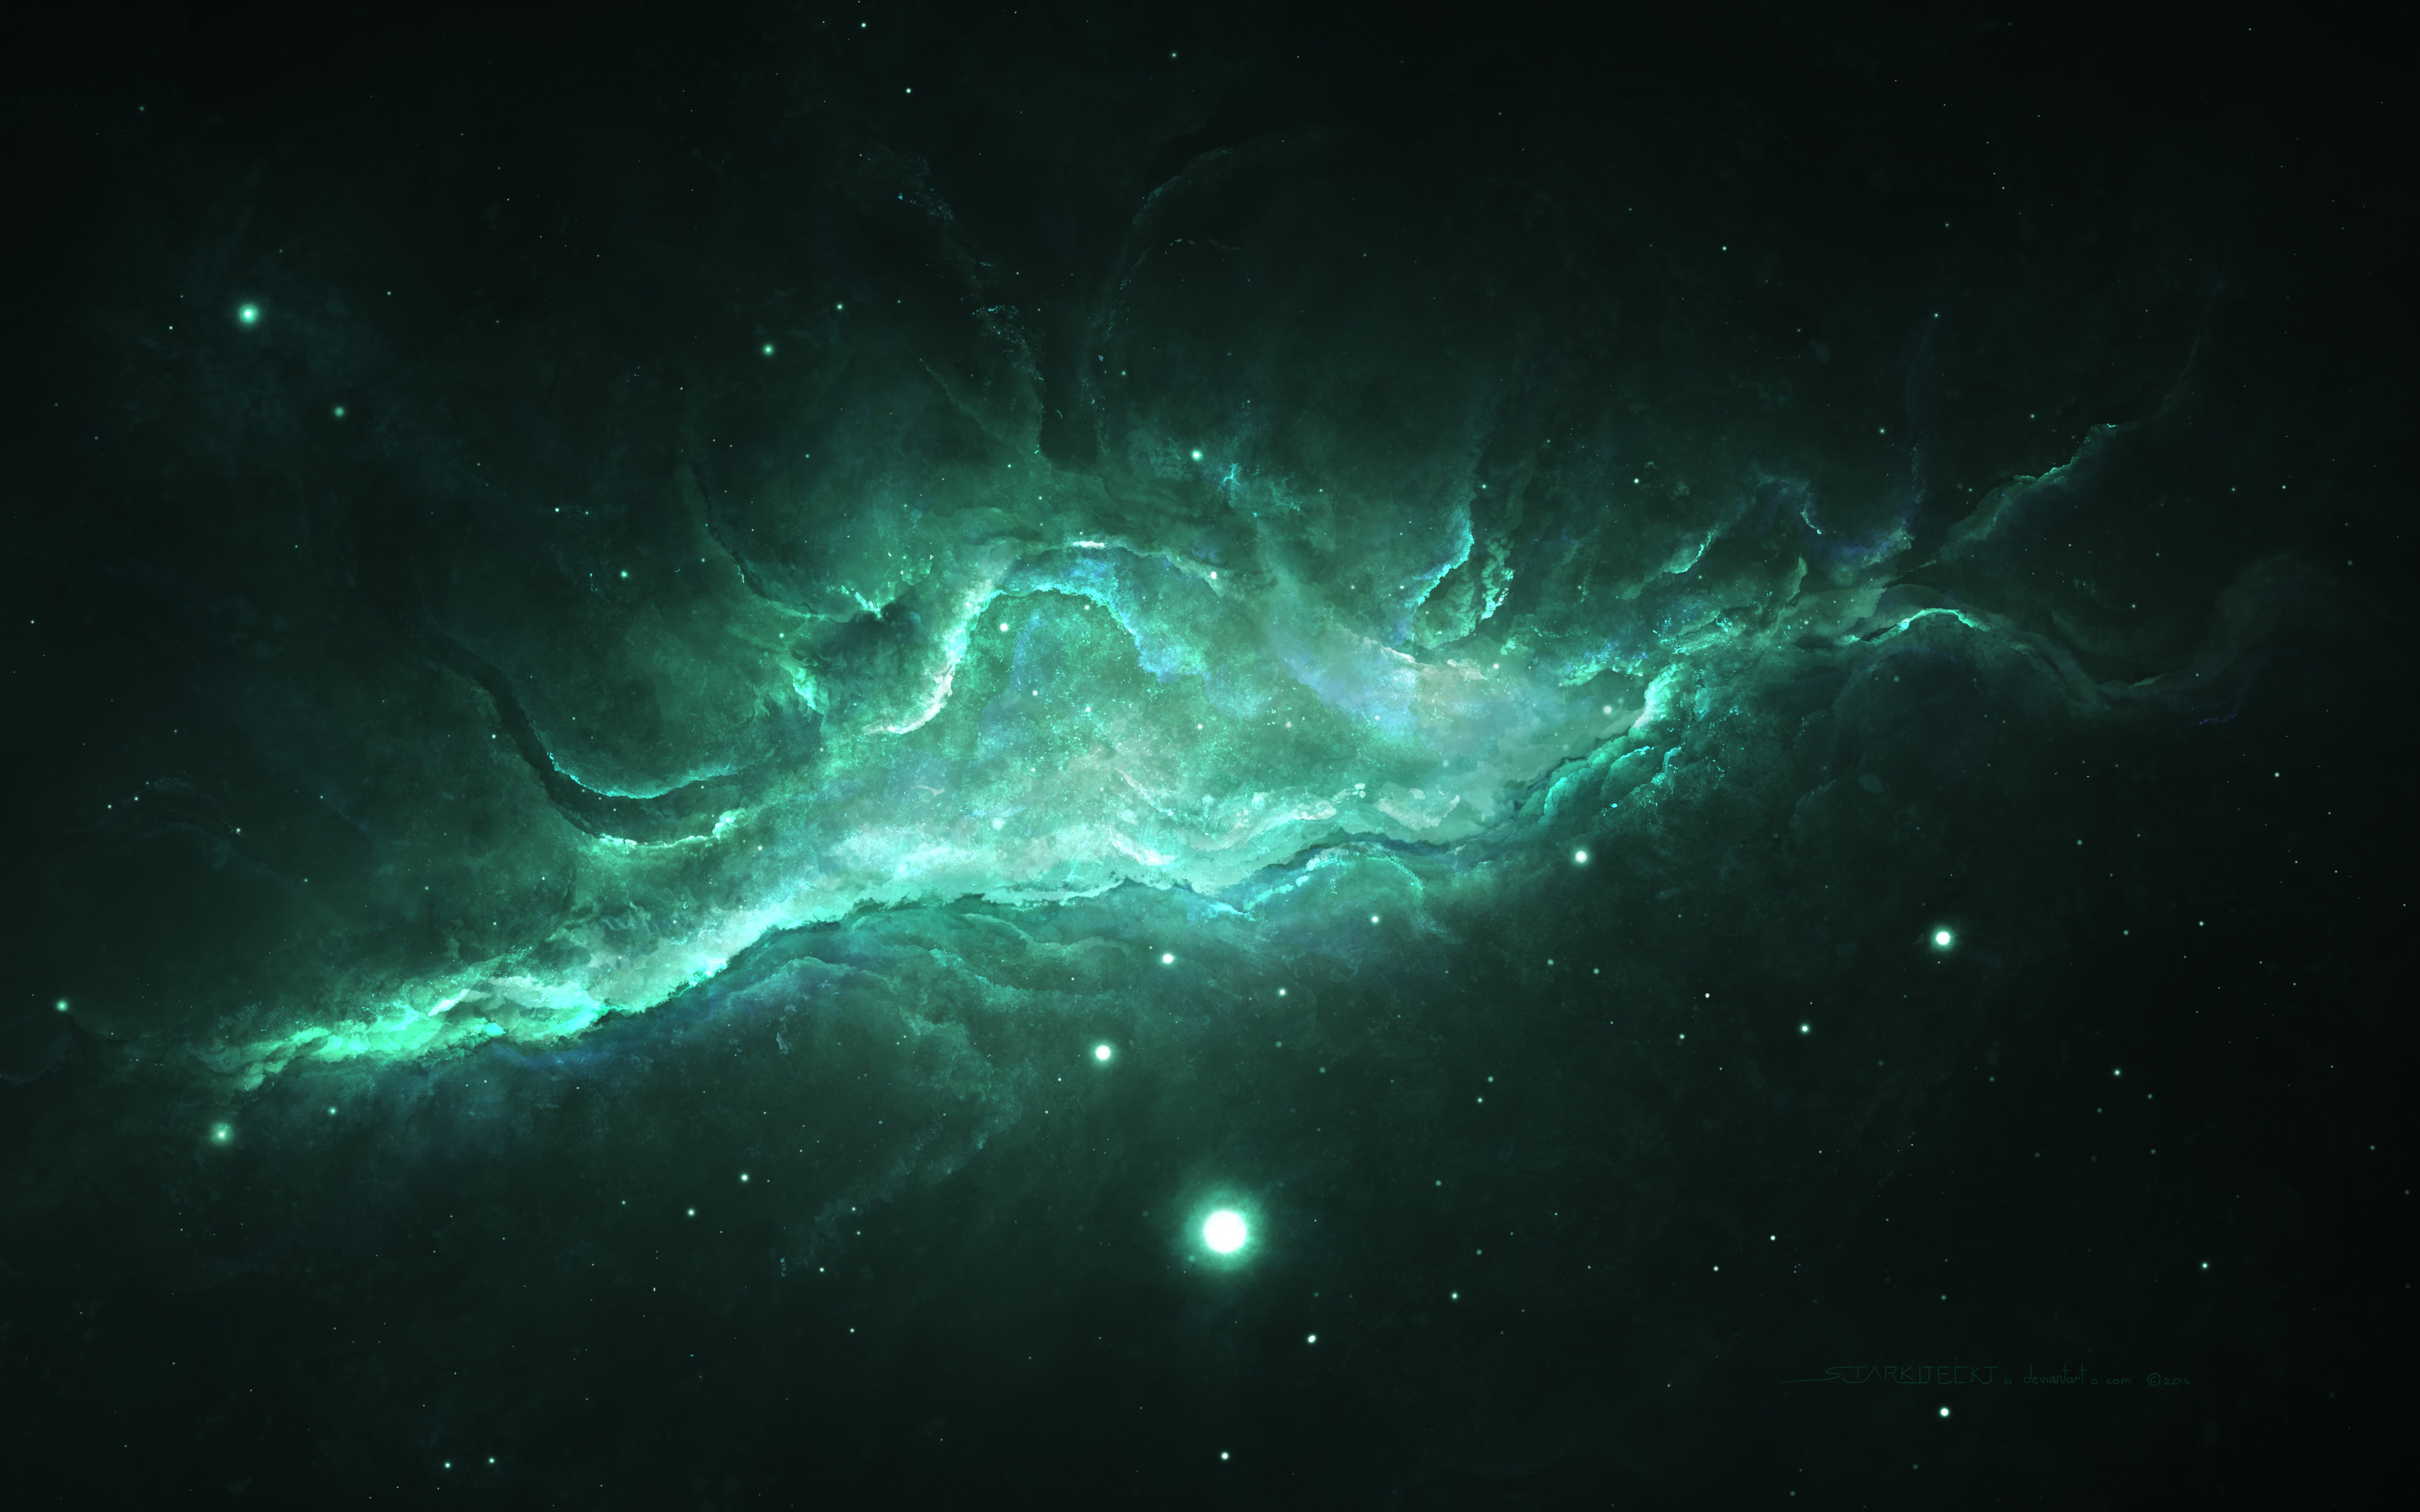 nebula space art 1574942784 - Nebula Space Art -